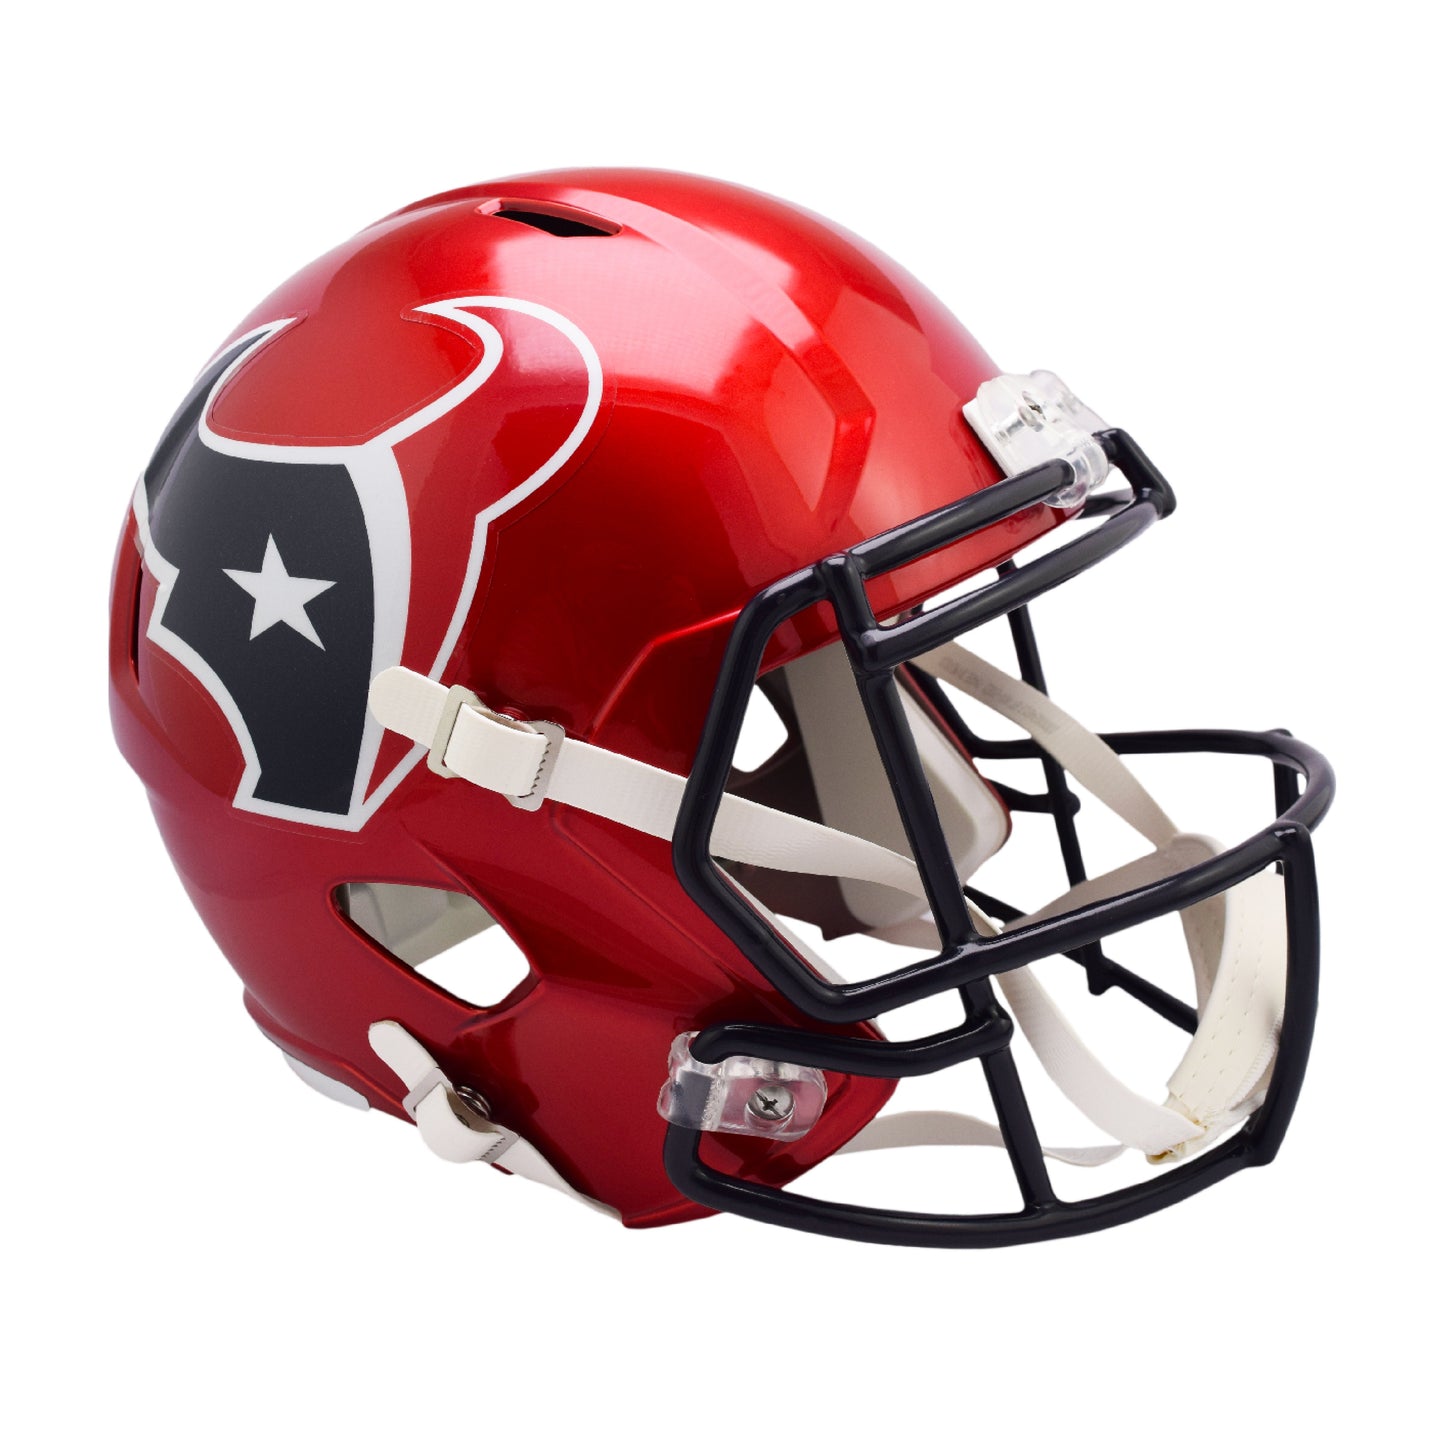 Houston Texans Riddell On-Field Alternate Full Size Speed Replica Football Helmet